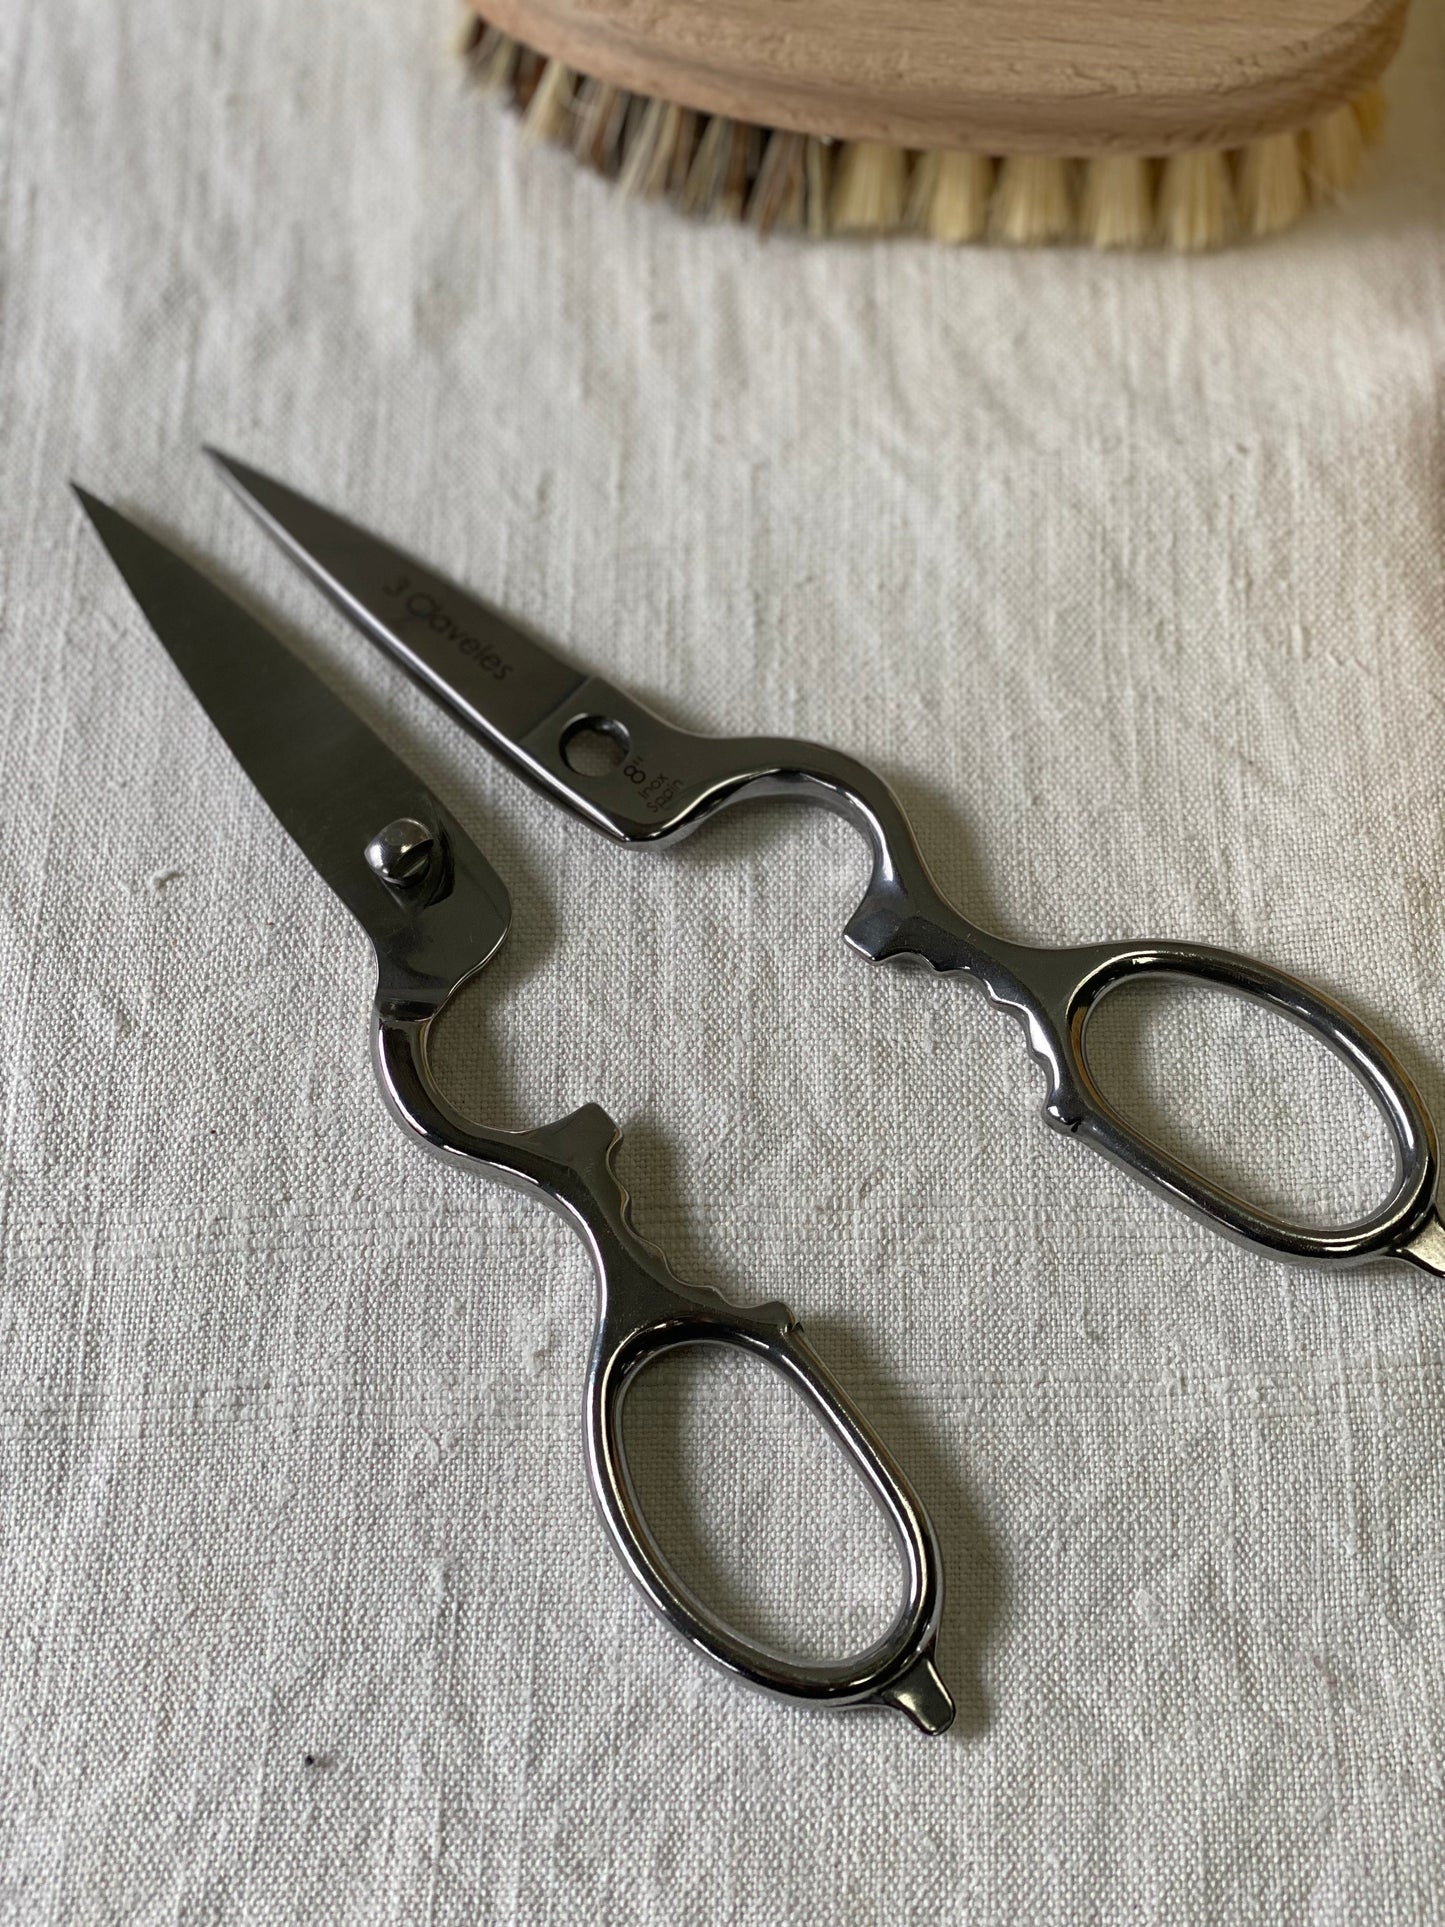 Scissors - Kitchen